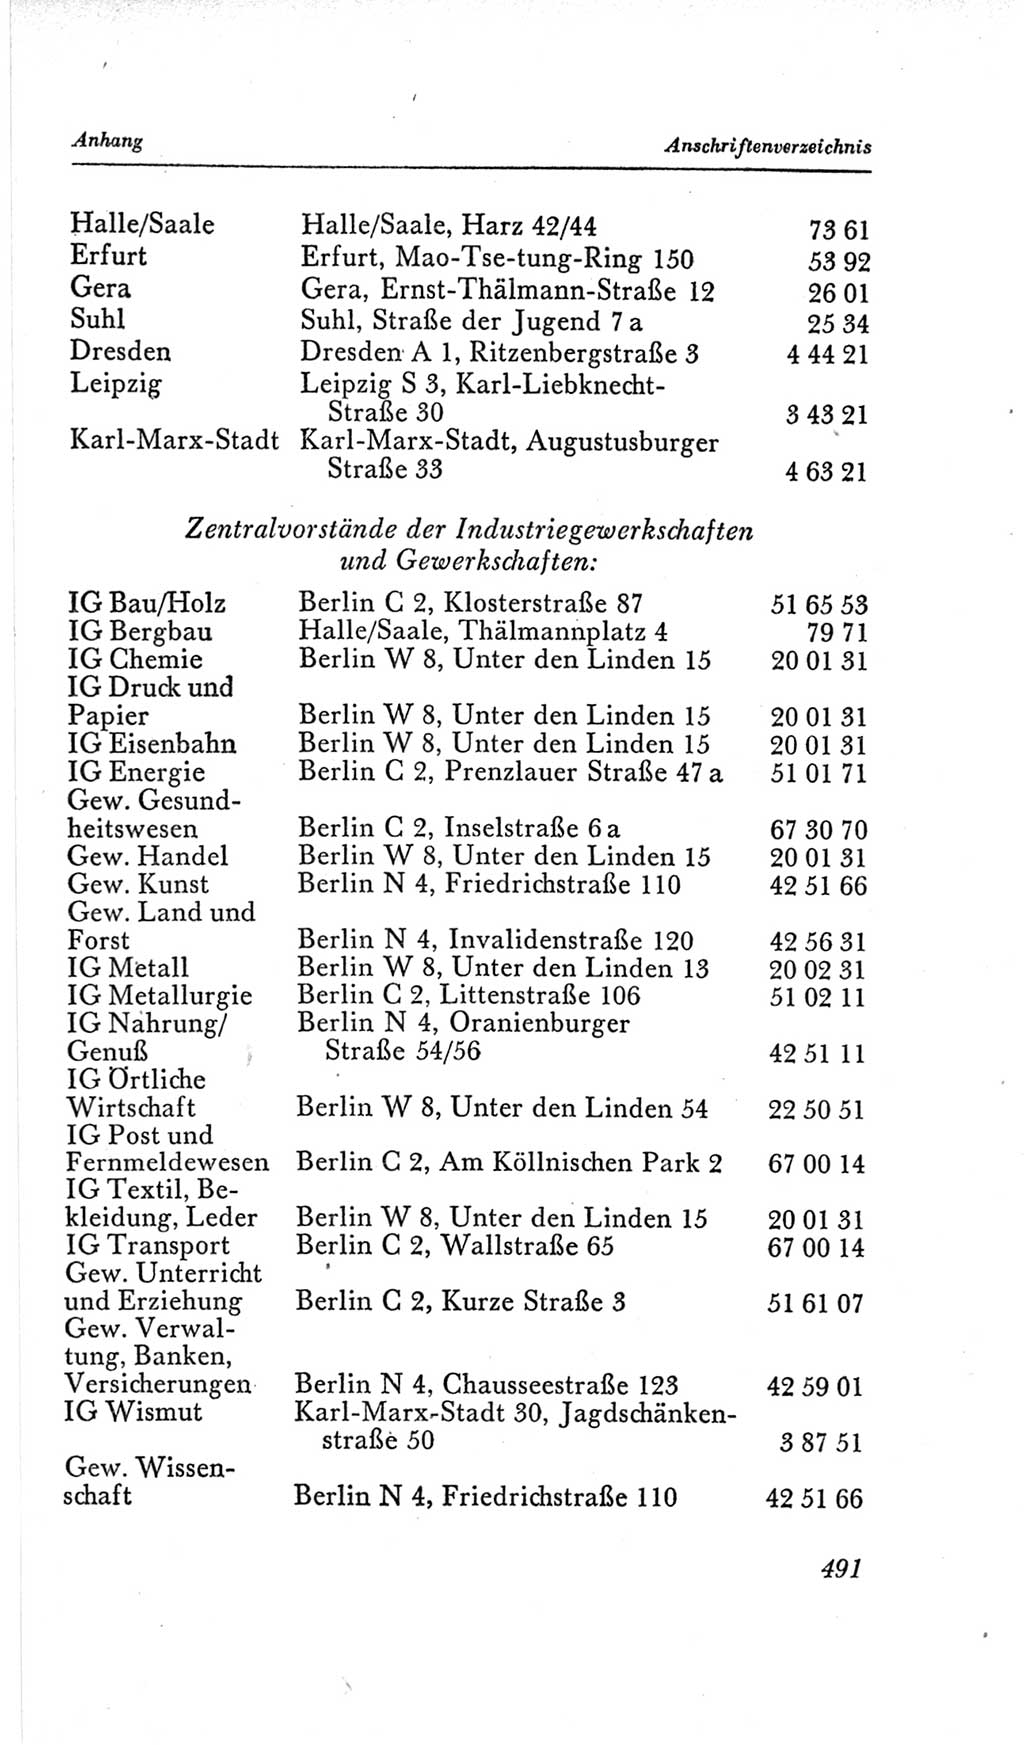 Handbuch der Volkskammer (VK) der Deutschen Demokratischen Republik (DDR), 2. Wahlperiode 1954-1958, Seite 491 (Hdb. VK. DDR, 2. WP. 1954-1958, S. 491)